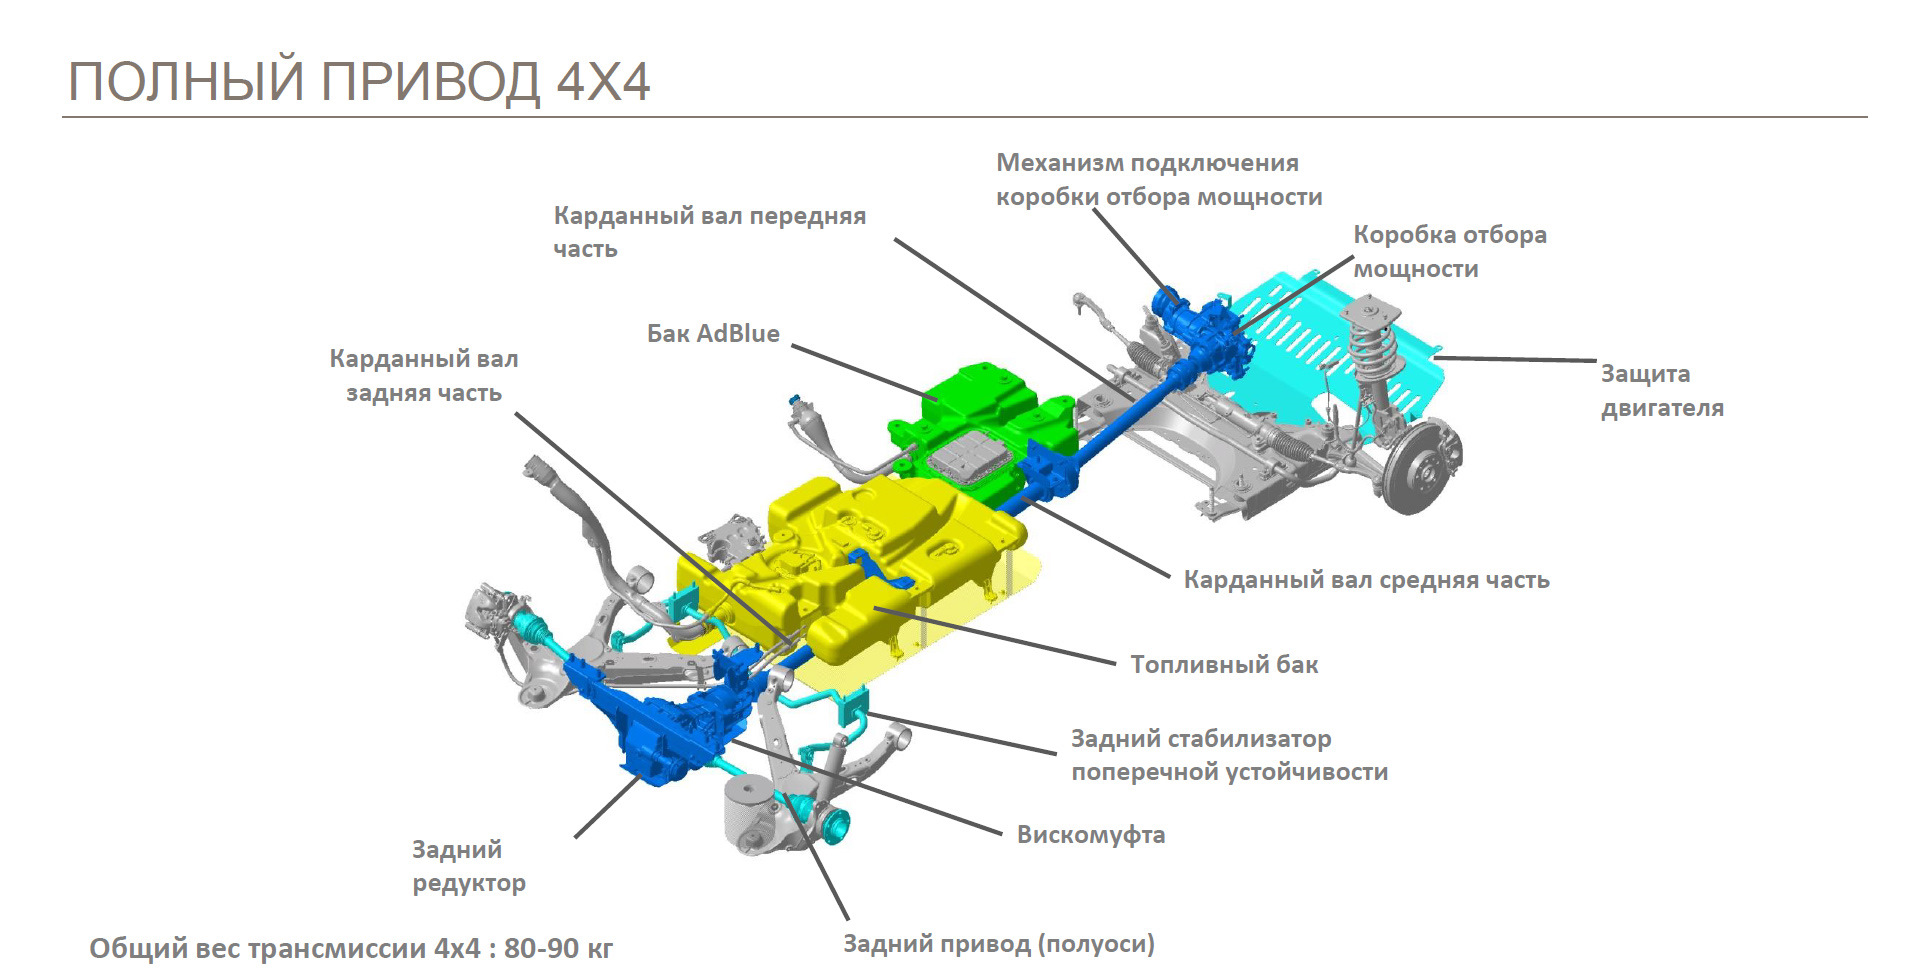 Полный привод ру. Peugeot Boxer 4x4 система полного привода. Сузуки Гранд Витара схема полного привода. Peugeot-4007 полный привод схема. Форд Транзит полный привод 4х4 трансмиссия.